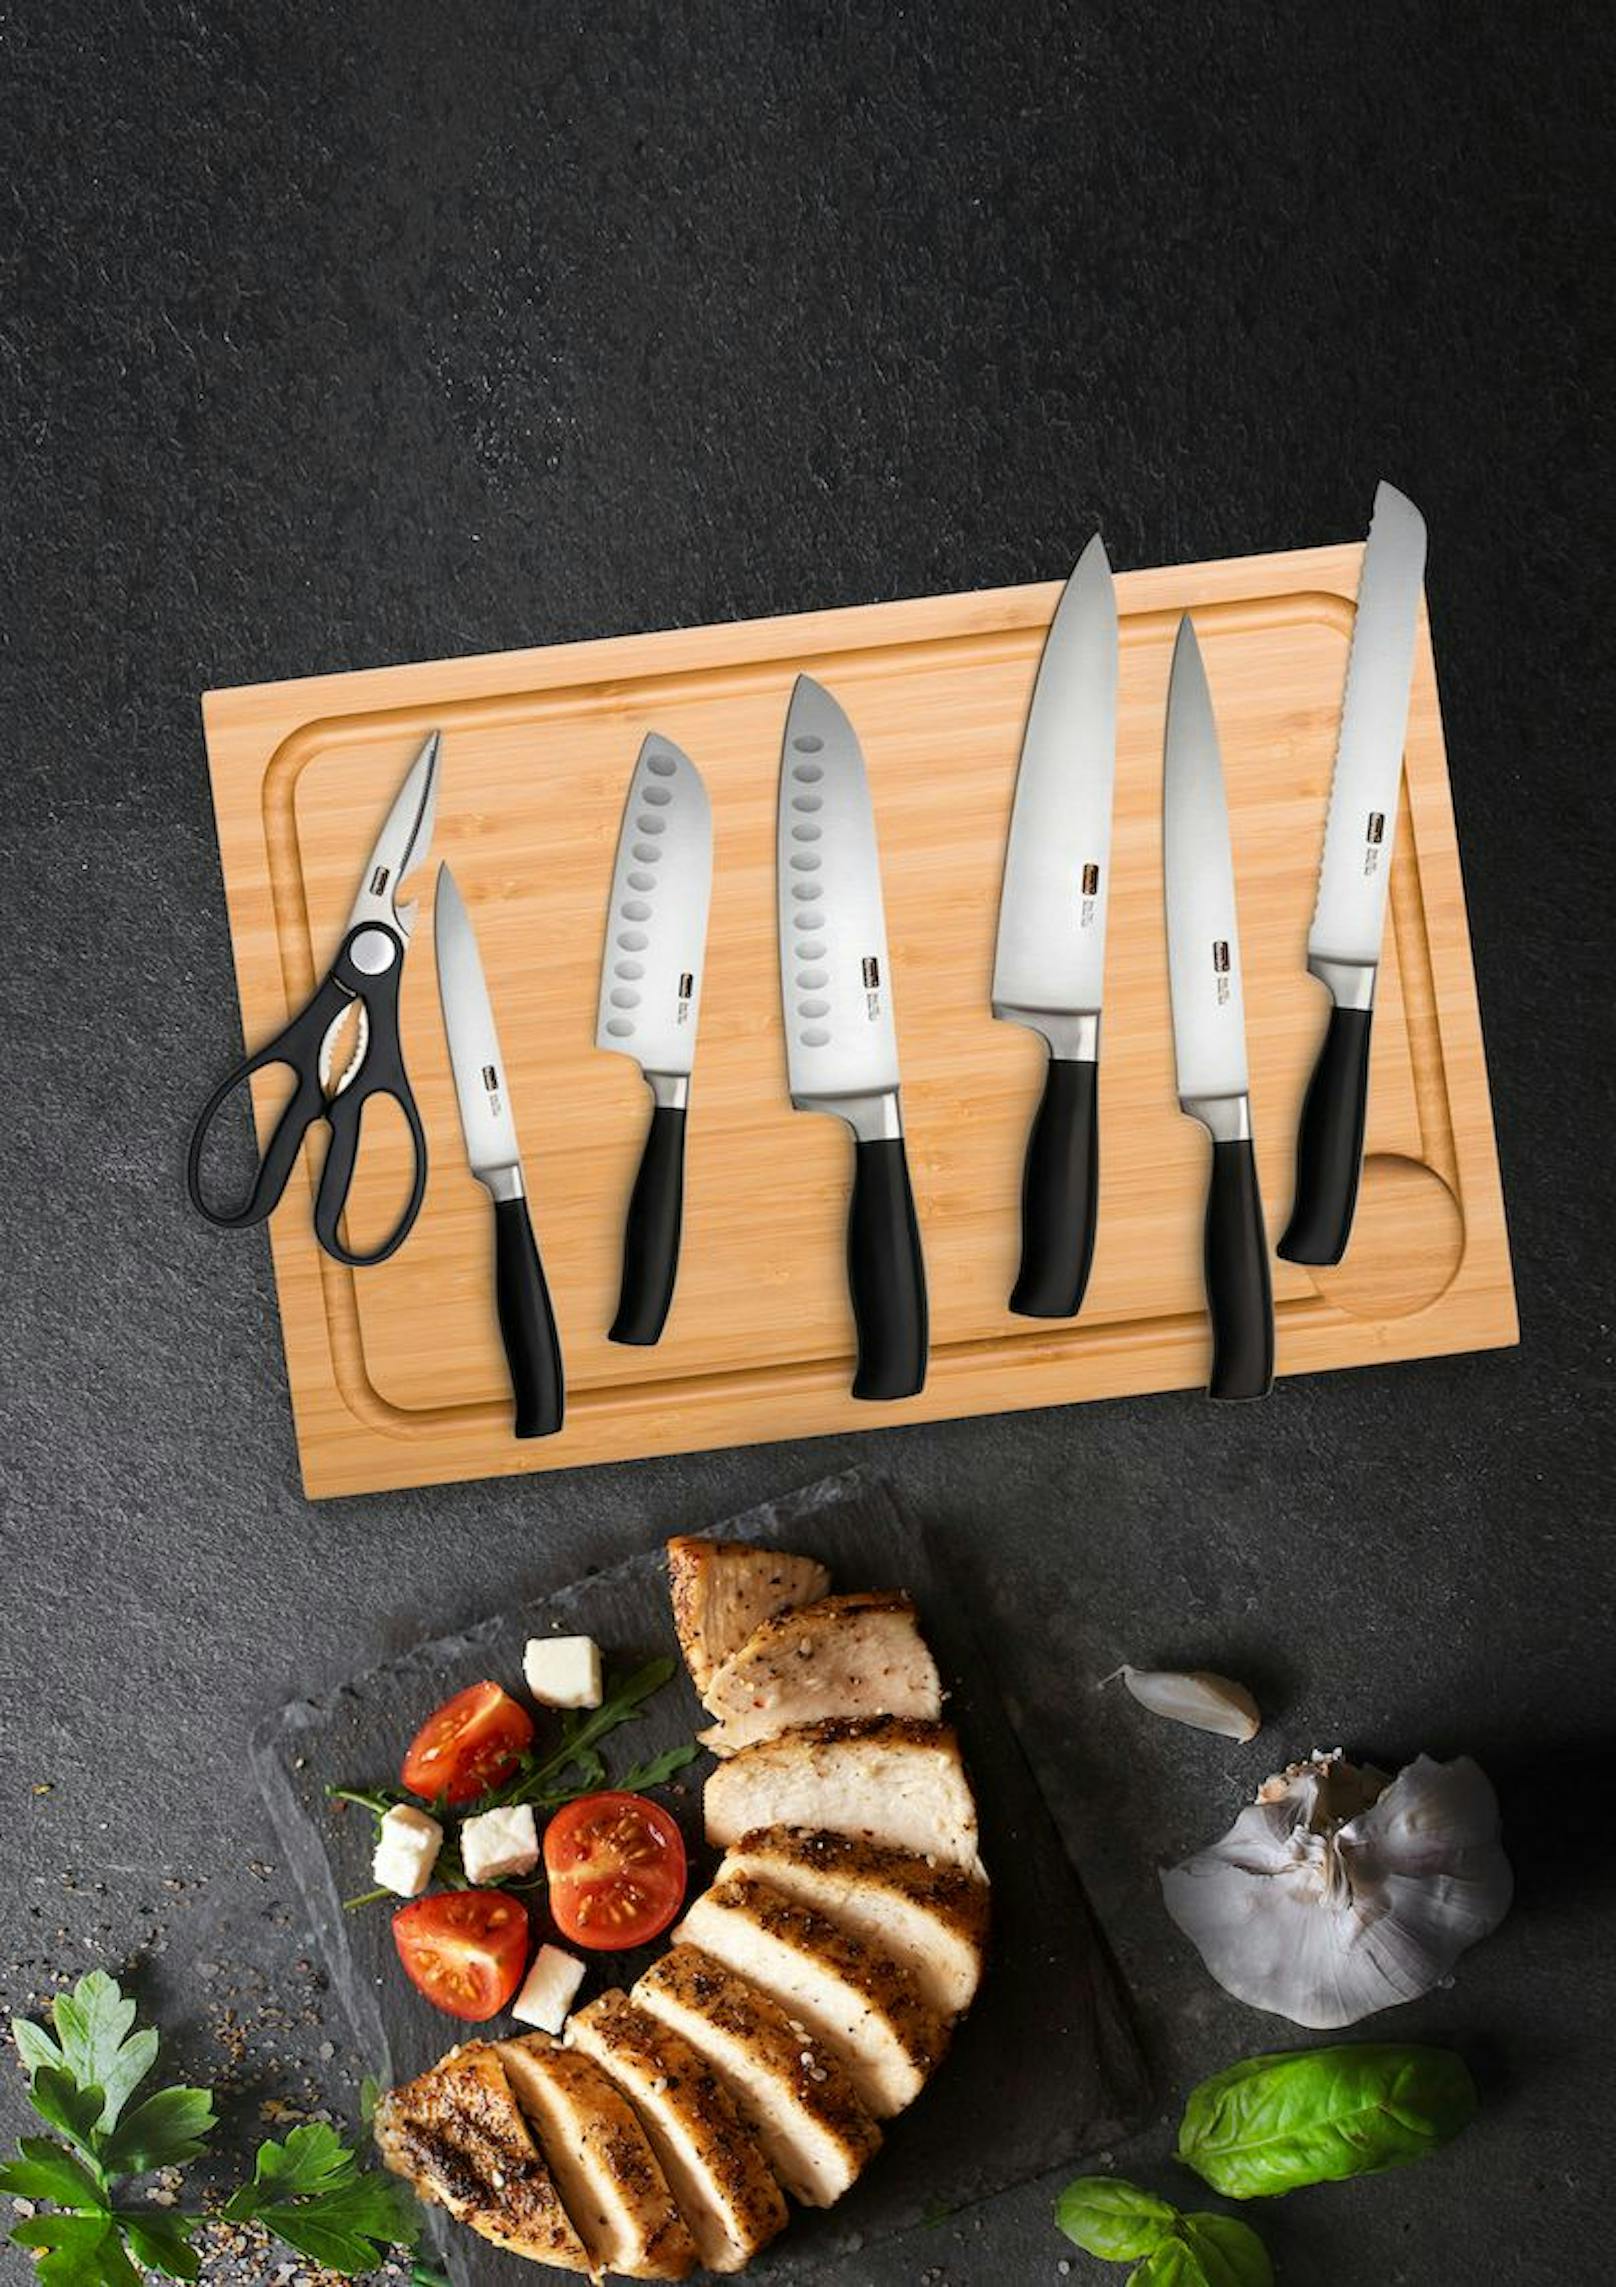 Küchenmesser von Berndes® - ein ideales Hilfsmittel beim Zubereiten köstlicher Speisen.